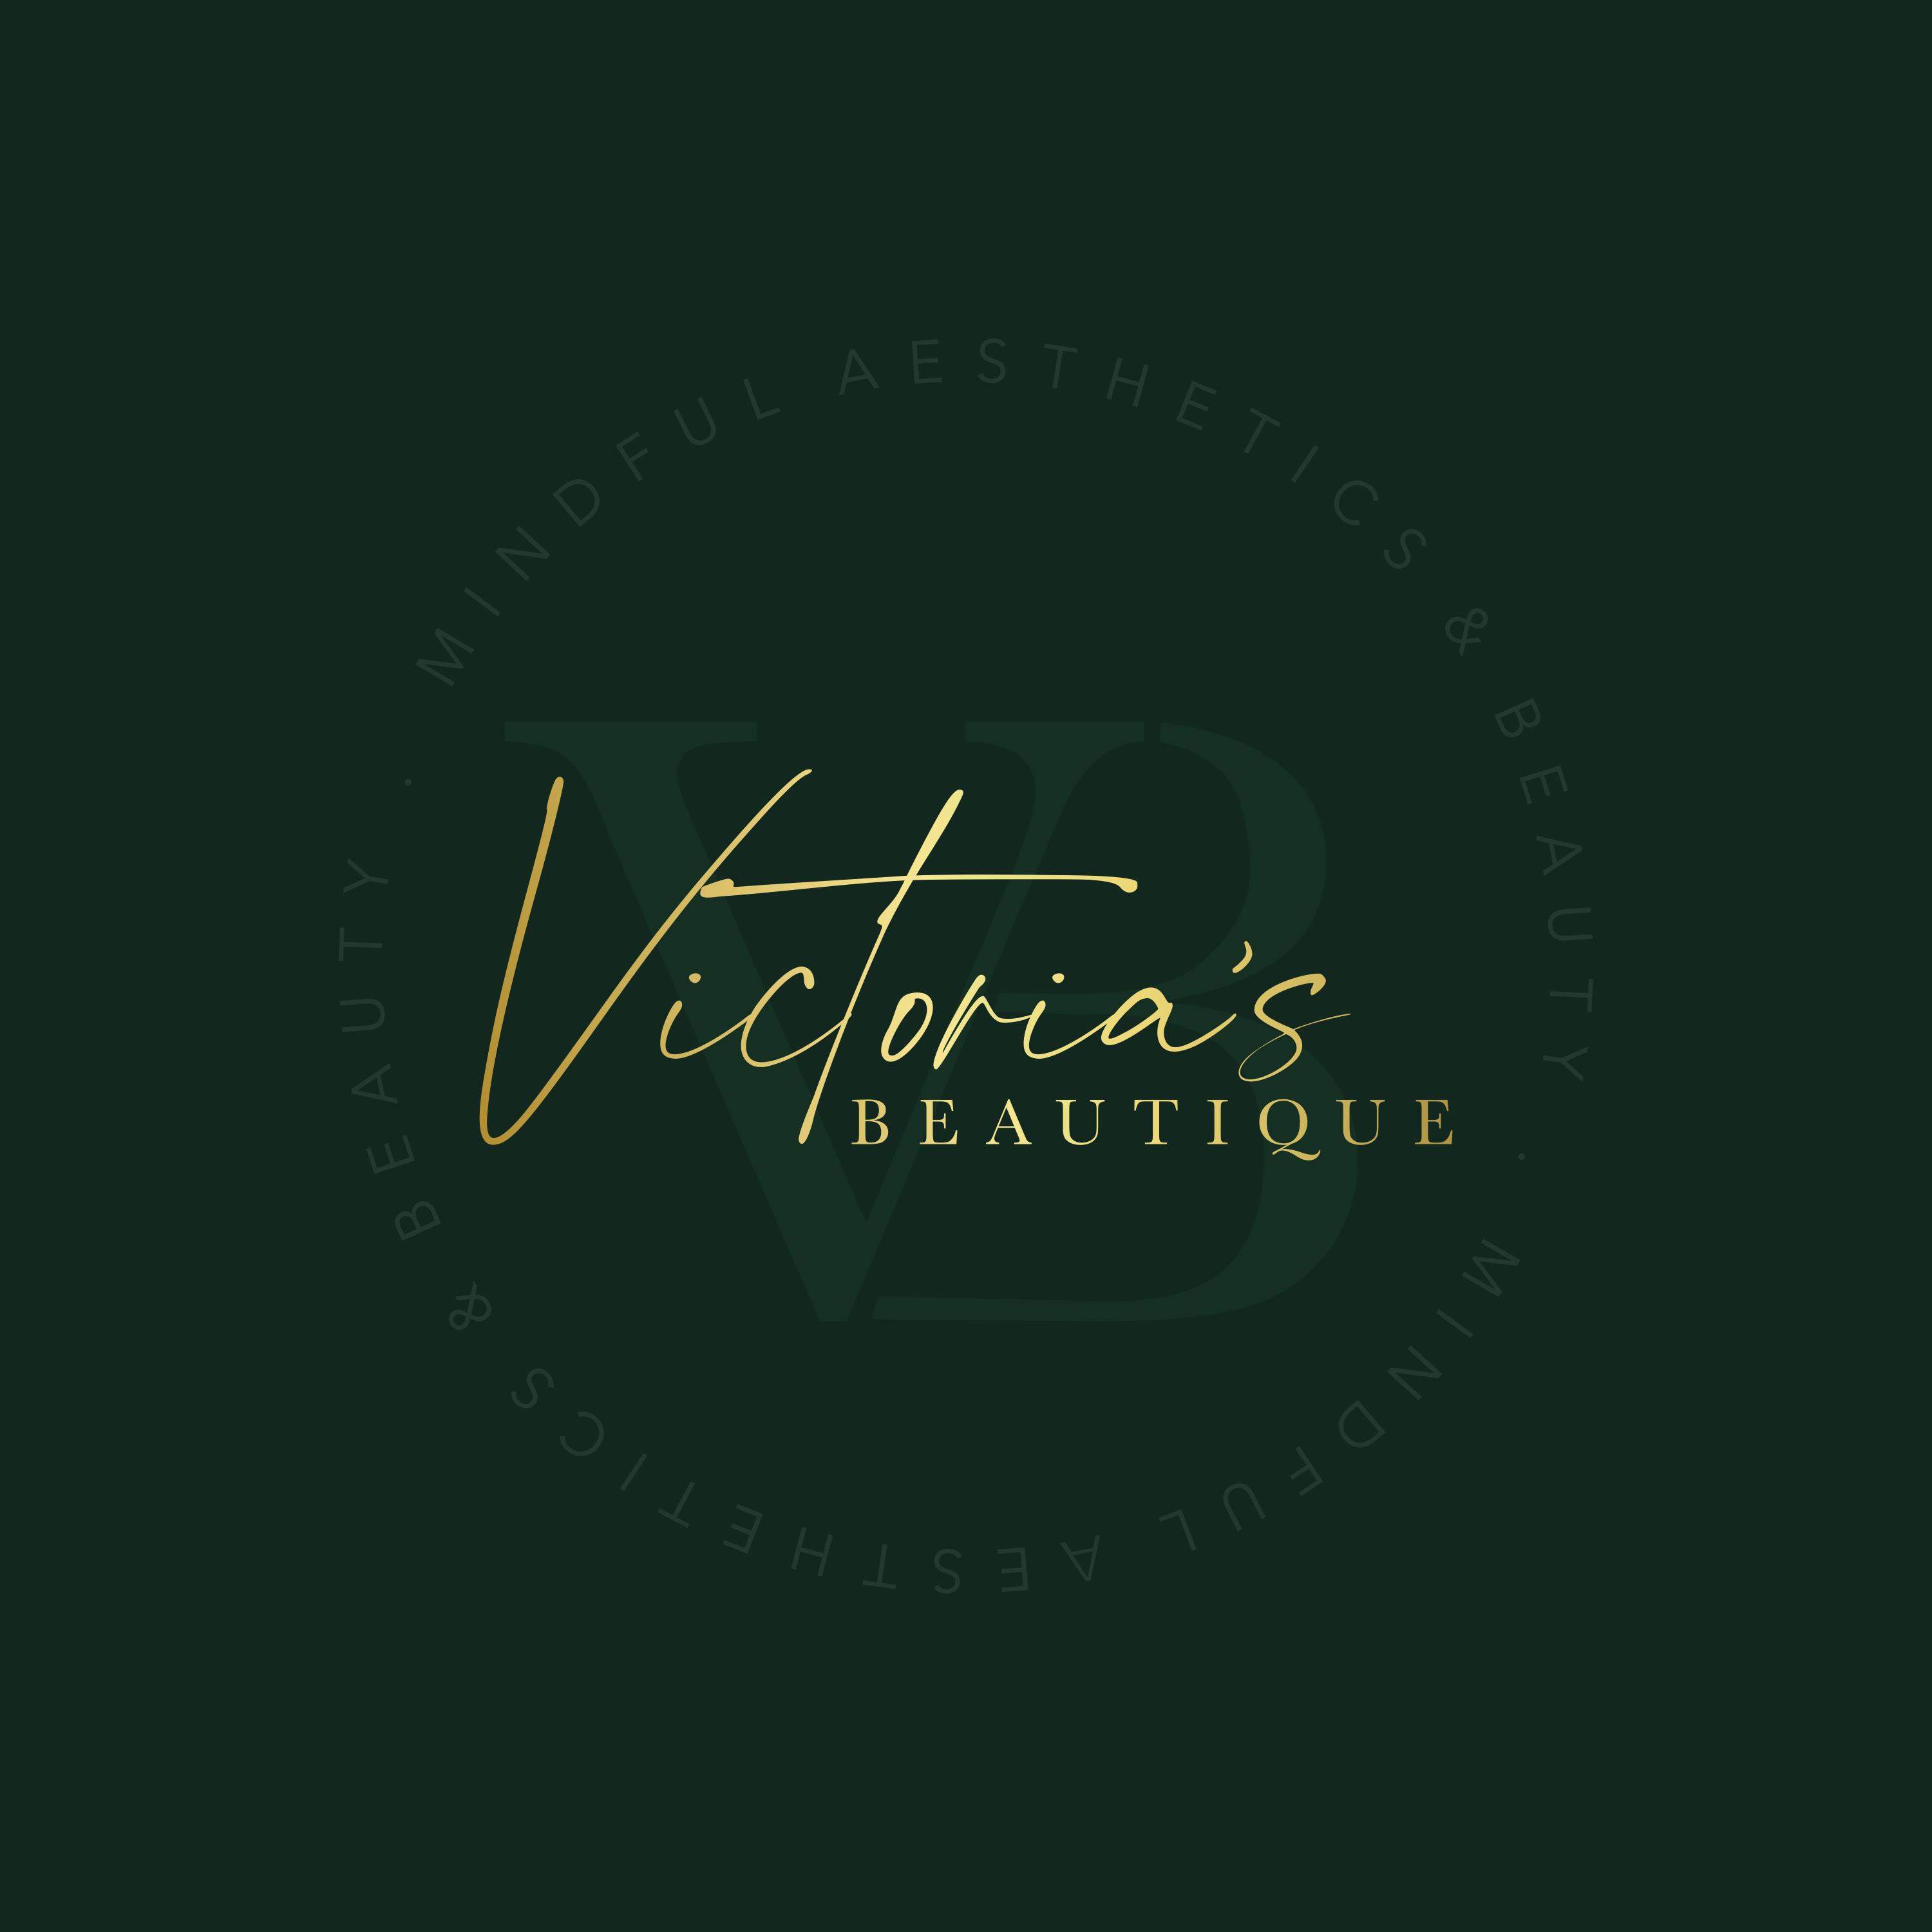 Victoria's Beautique Hambledon Godalming Surrey 